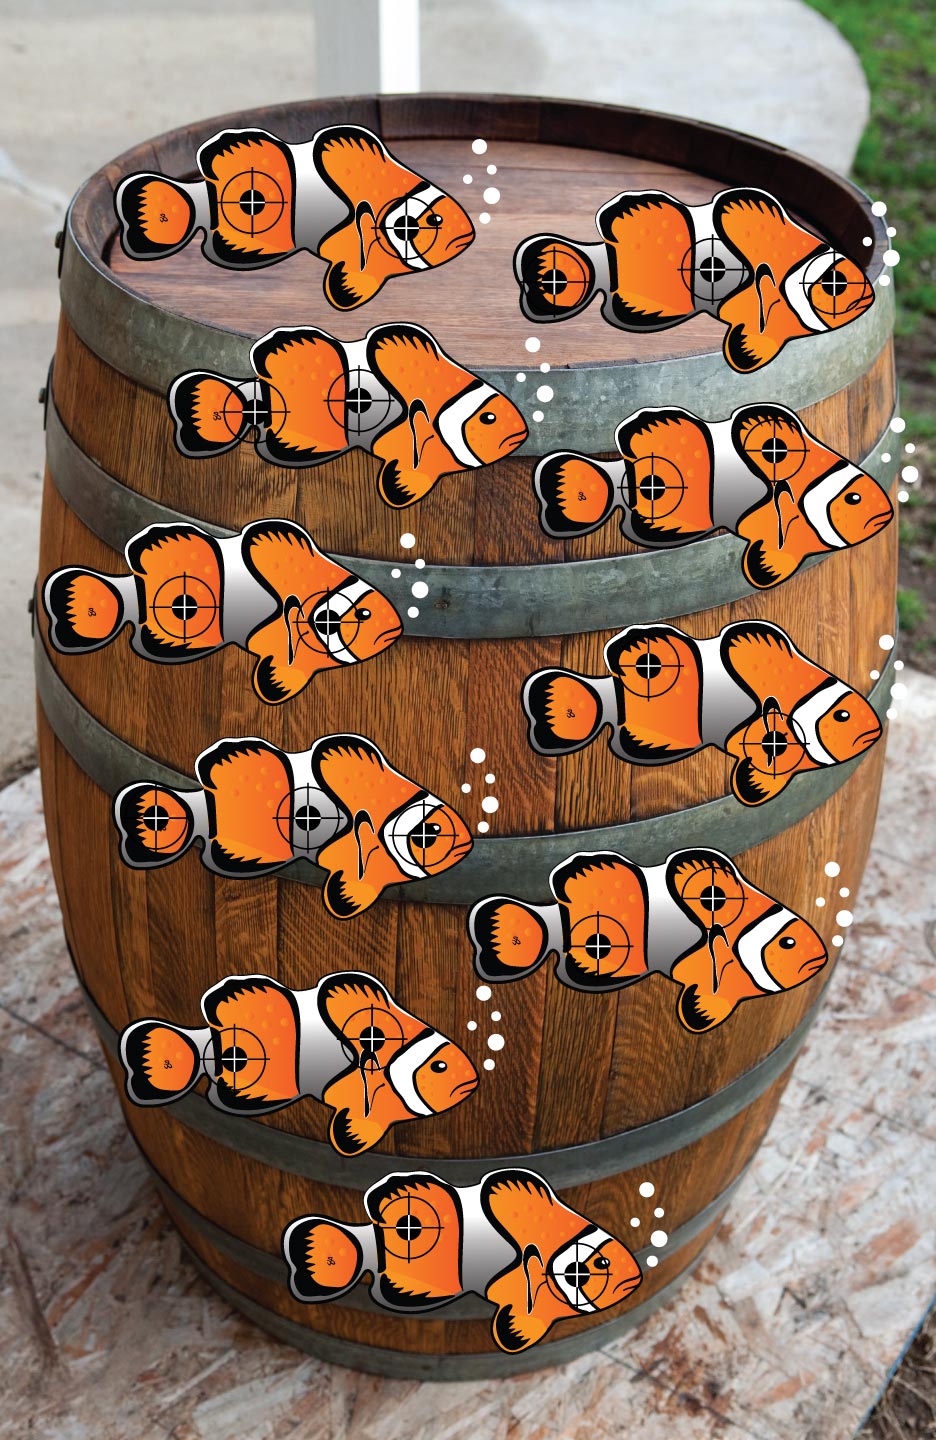 Fish in a Barrel Shooting Target at PhotosAndFun.com